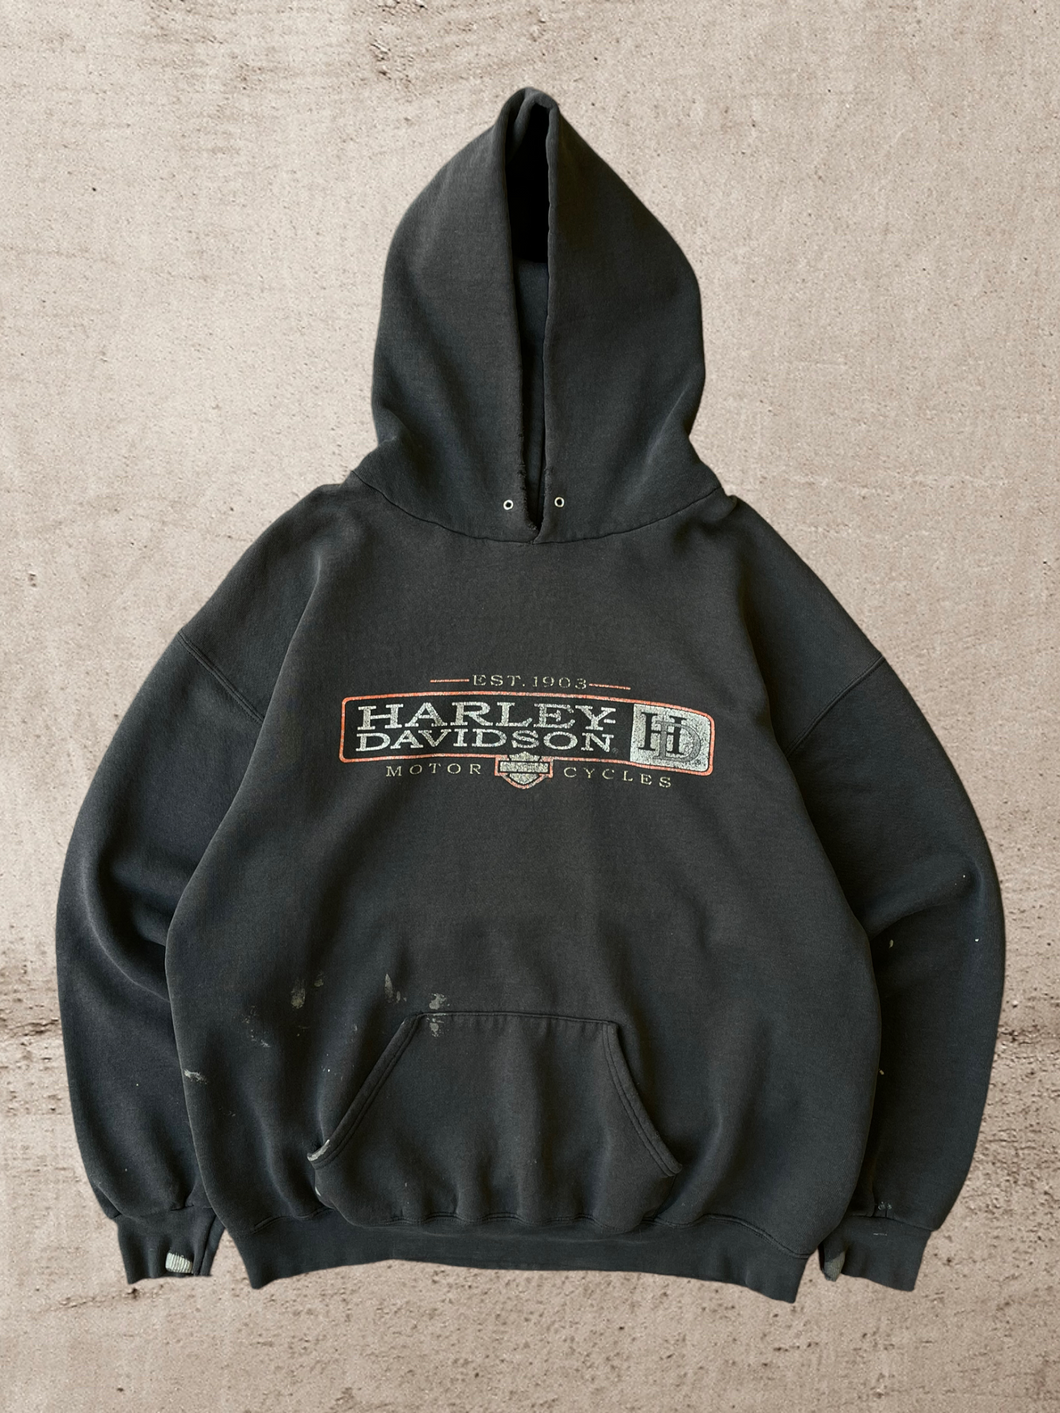 1997 Distressed Harley Davidson Sweatshirt - Large